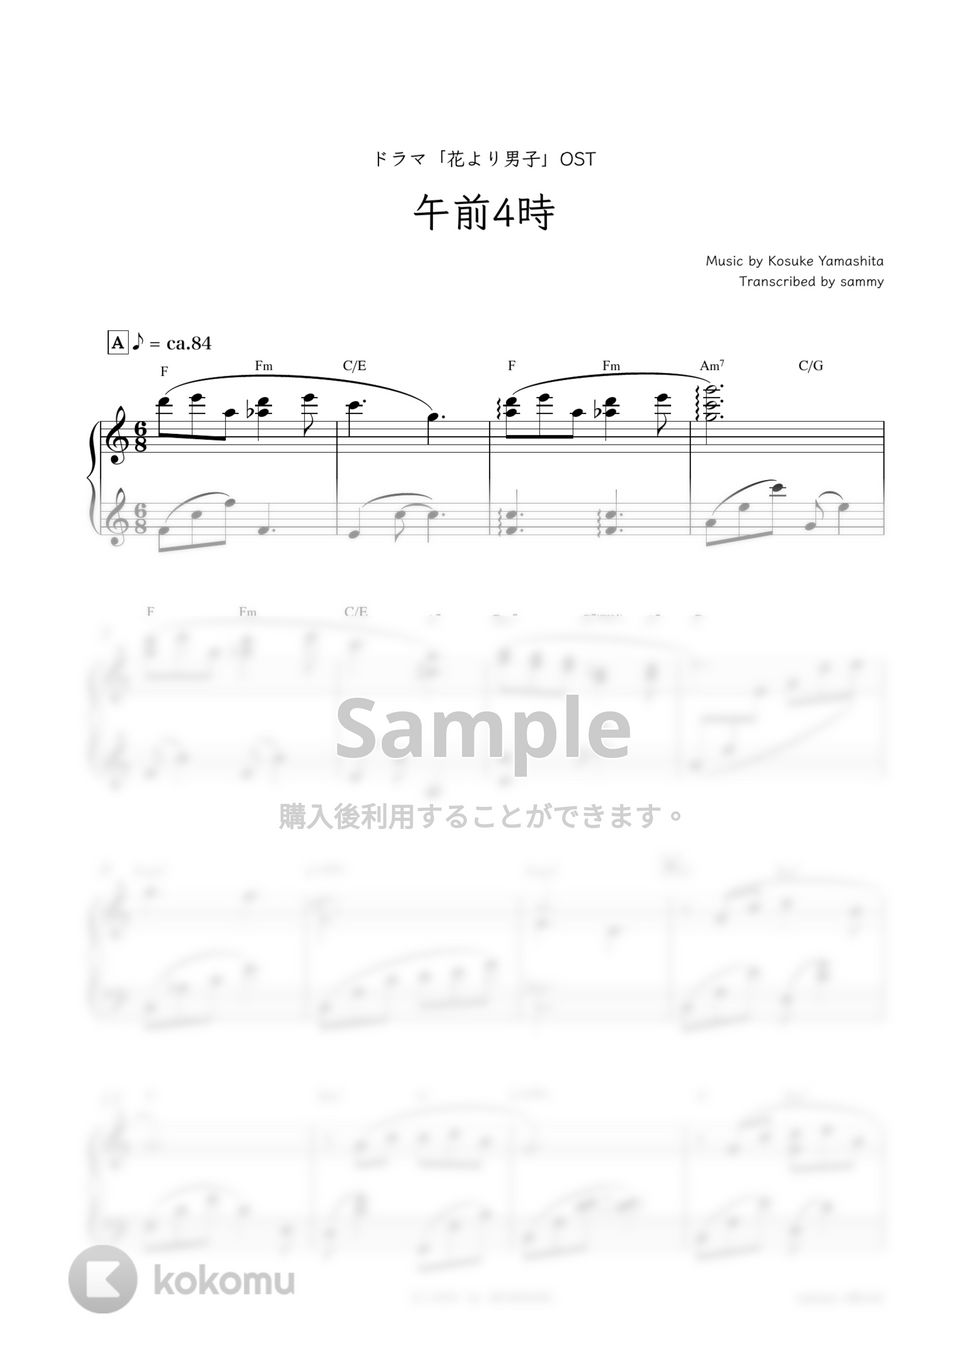 ドラマ『花より男子』OST - 午前4時 by sammy